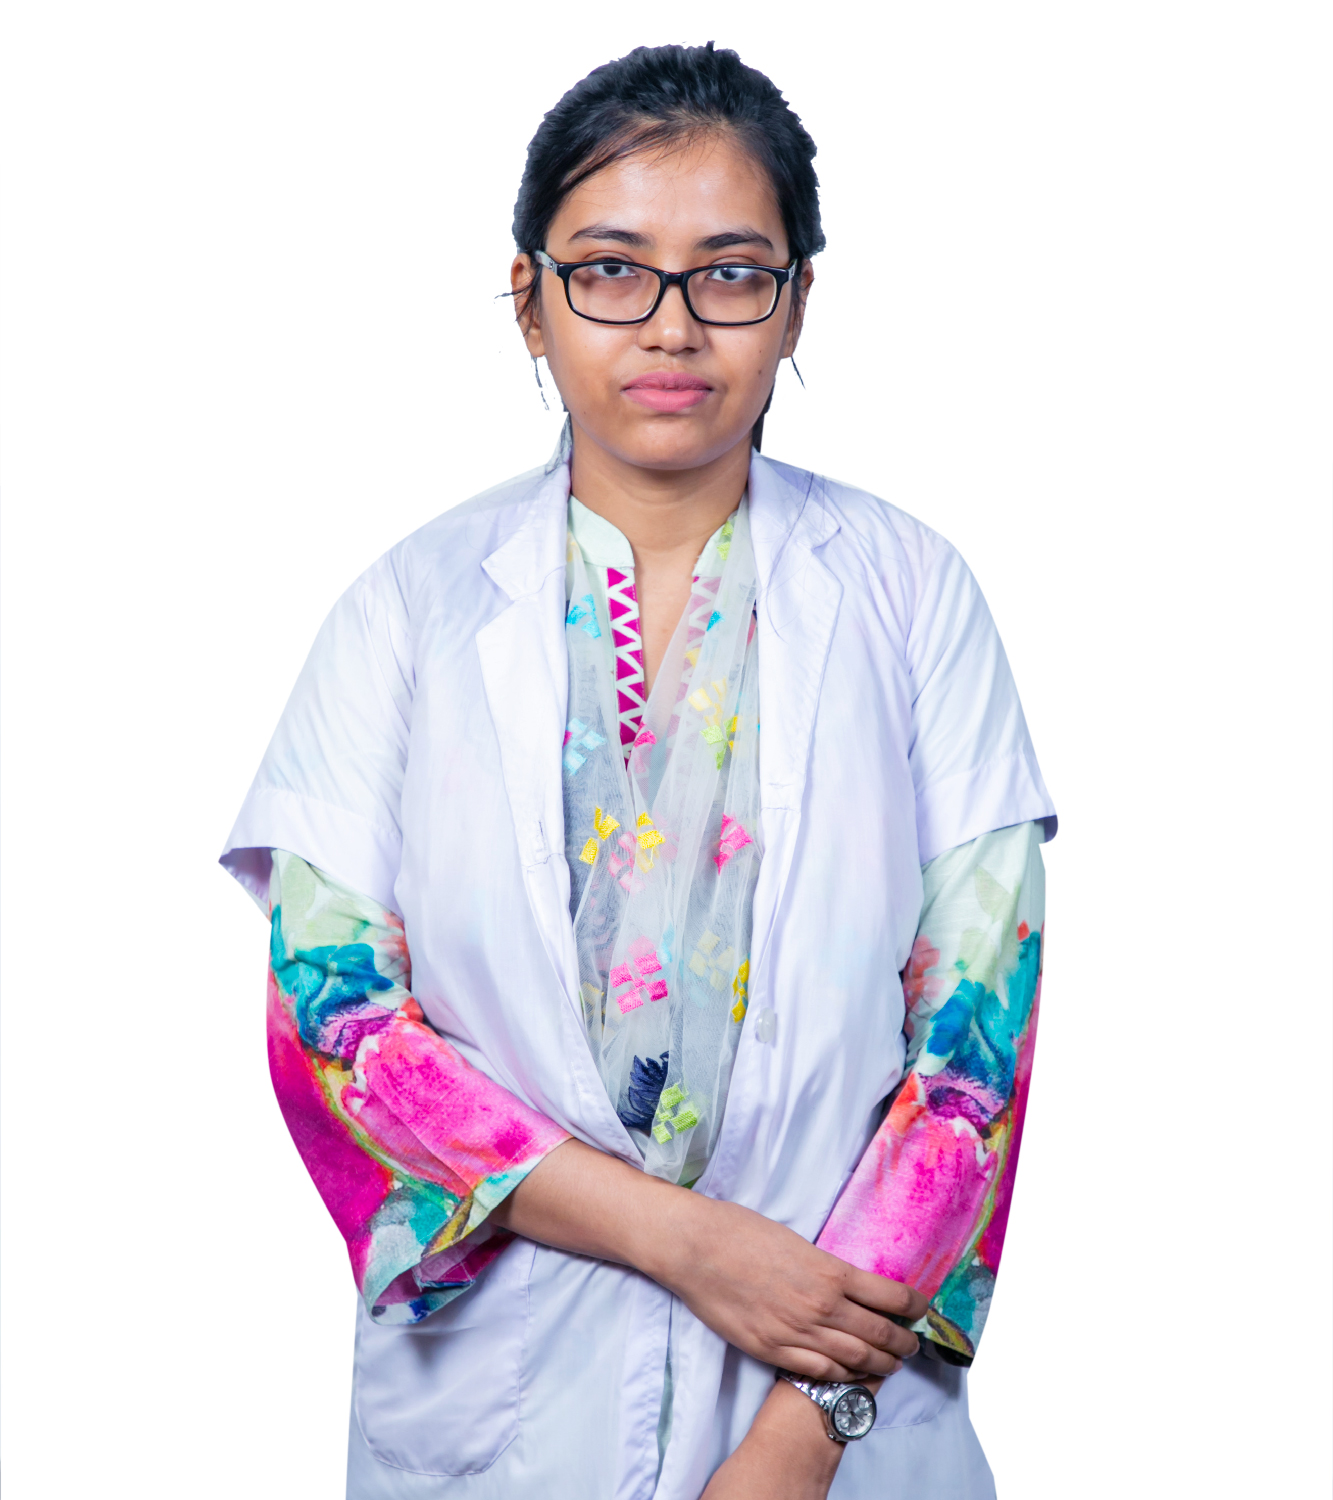 Dr. Rubyat Rahman Trisha-01